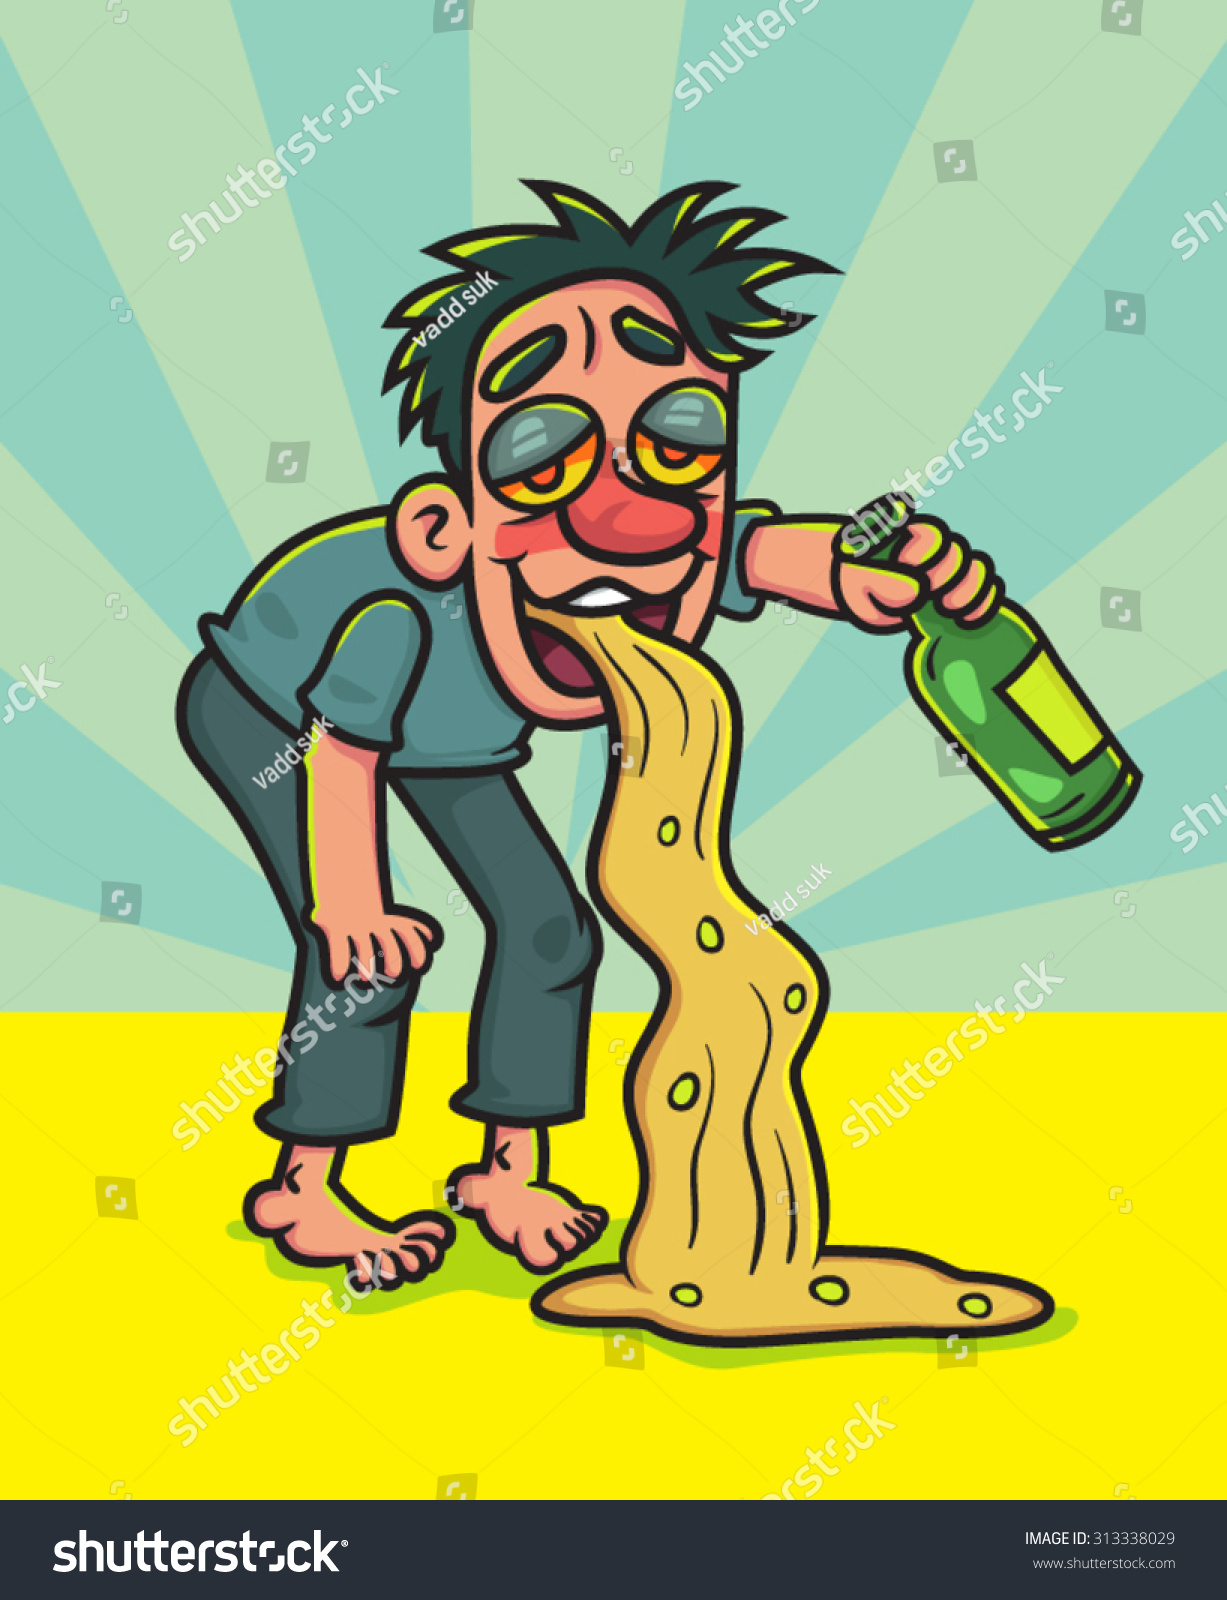 Cartoon Drunk Man With Bottle Vomits, Illustration - 313338029 ...